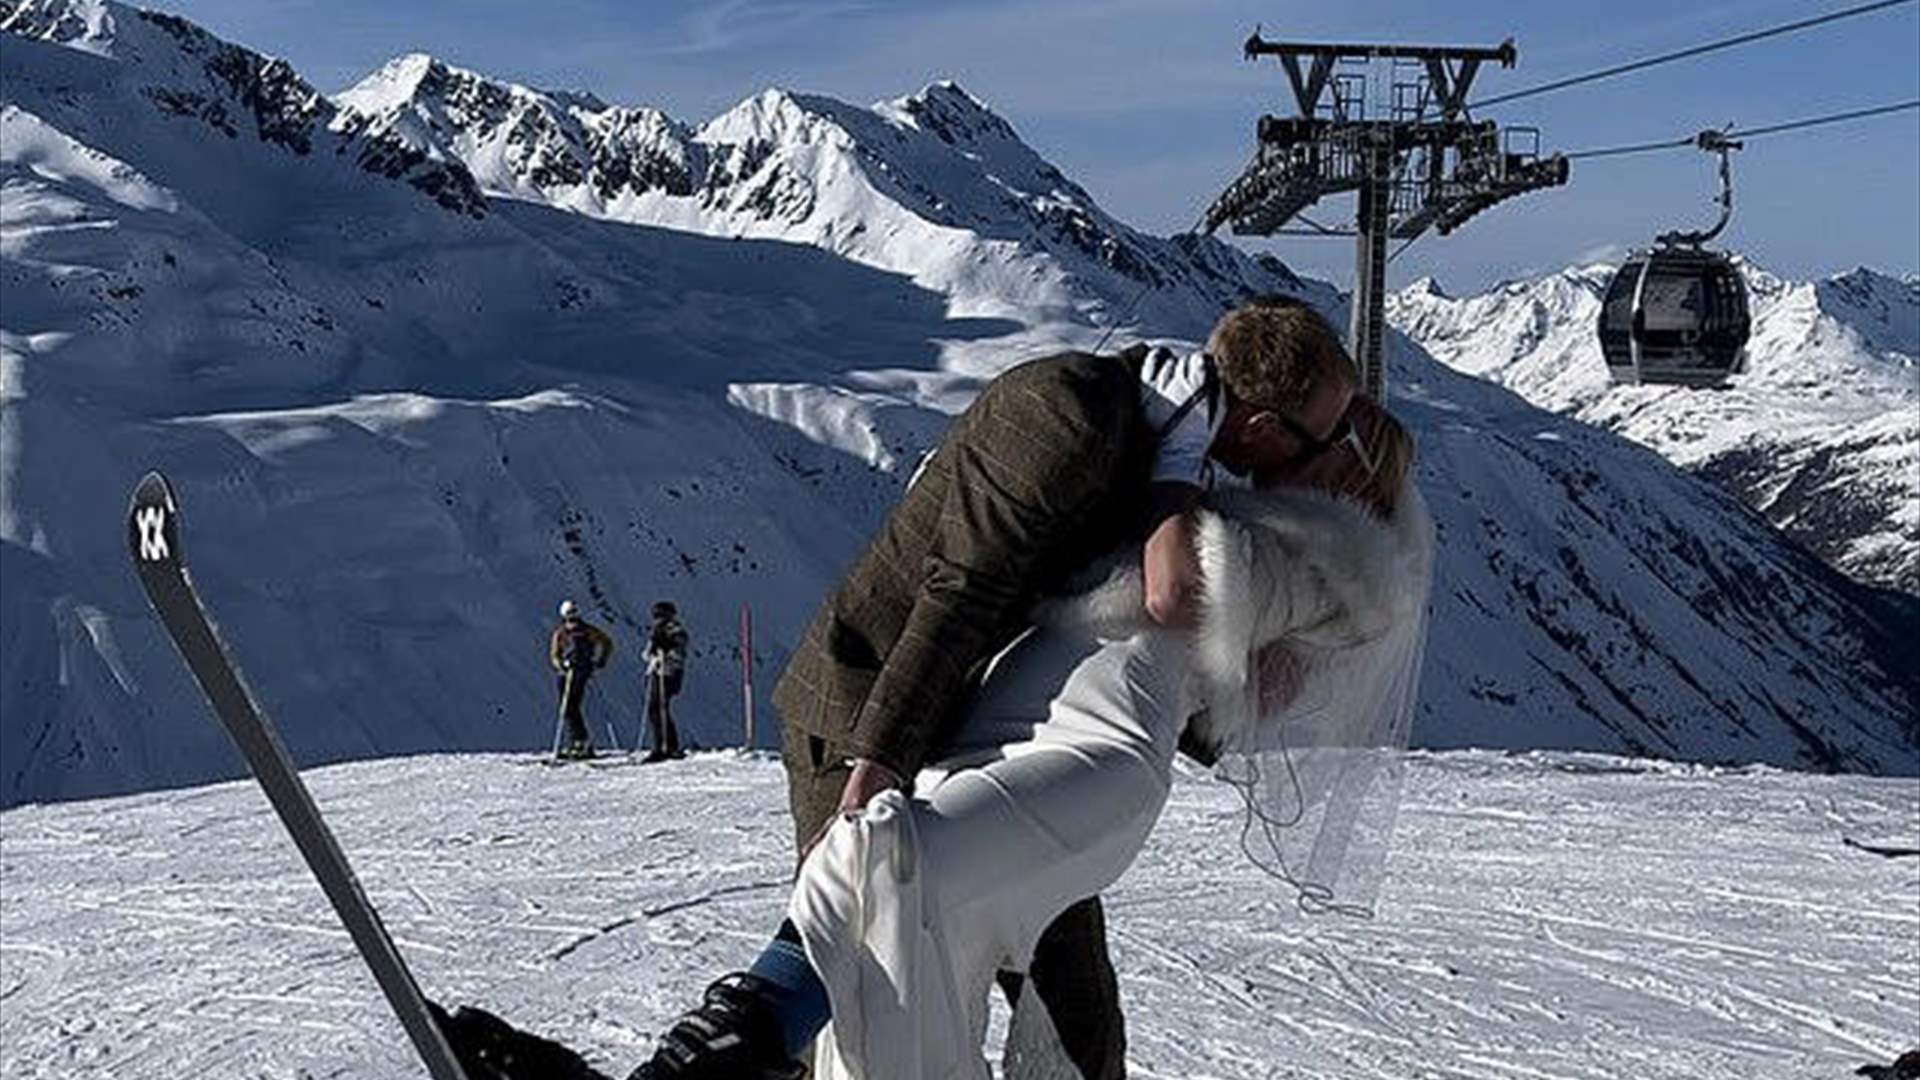 عروس مهووسة بالتزلج تقيم حفل زفافها على قمة جبل ثلجي... والنتيجة مذهلة! (فيديو)